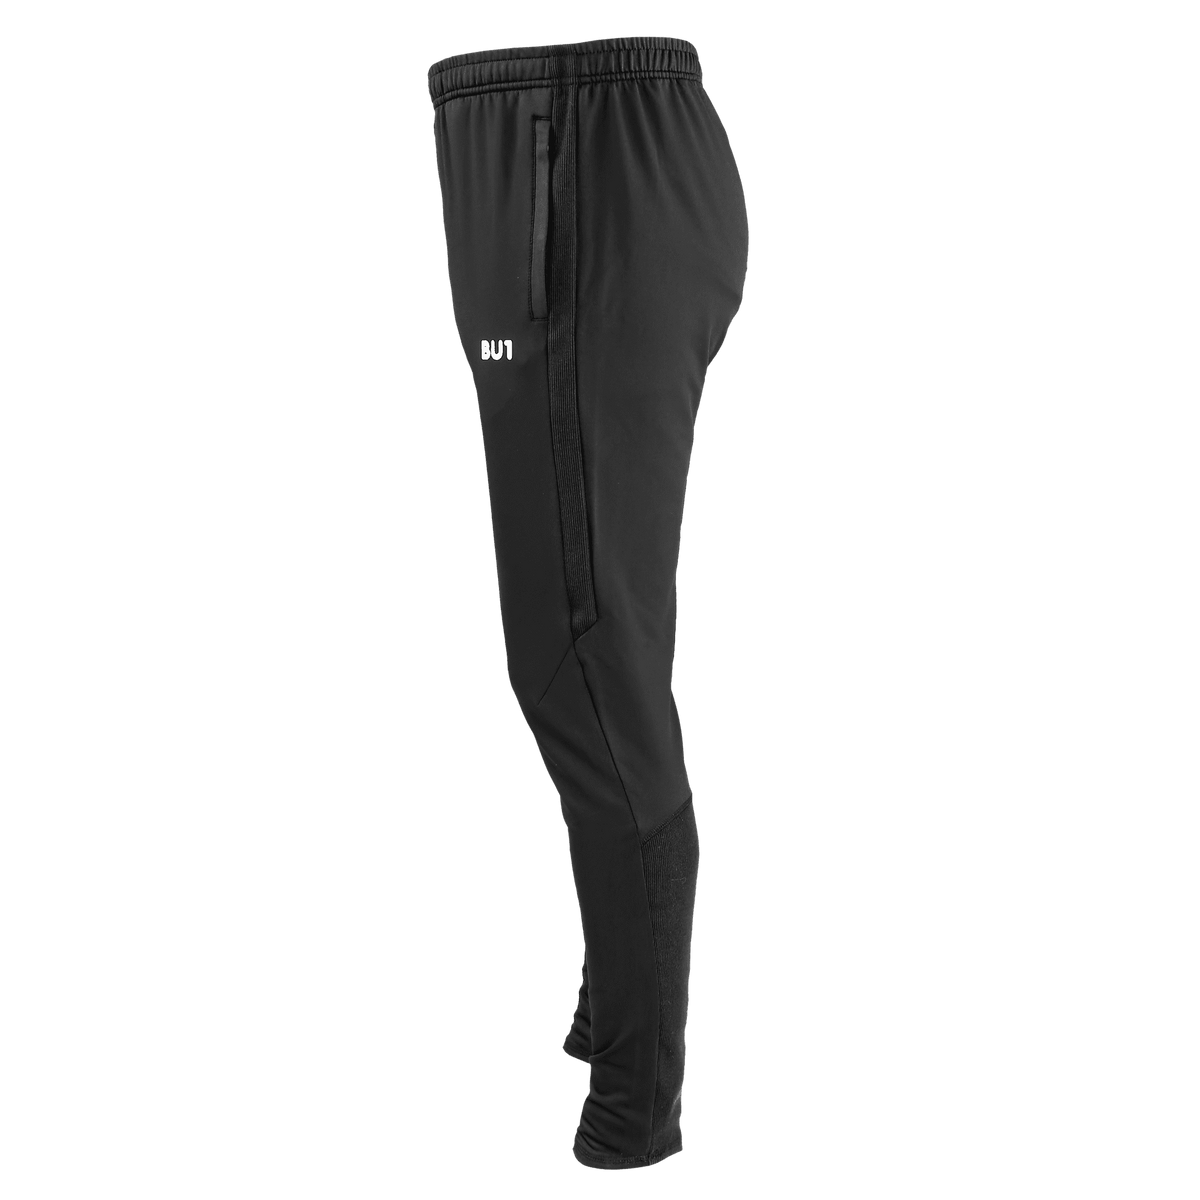 Pantalón deportivo BU1 22 negro